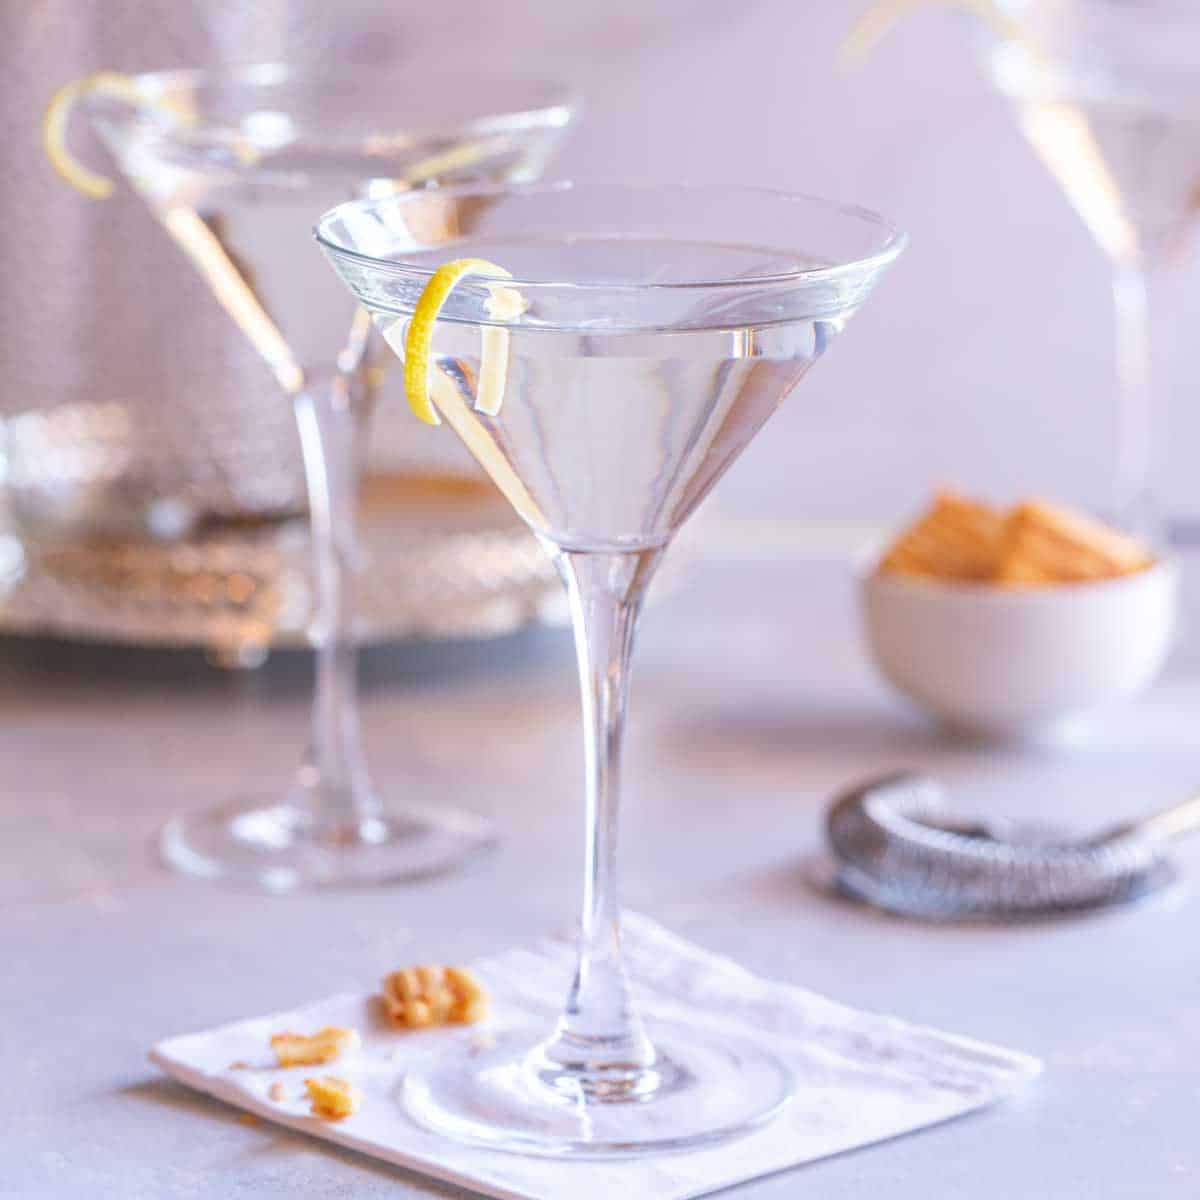 https://www.seasonedkitchen.com/wp-content/uploads/vodka-martini-recipe-sq.jpg